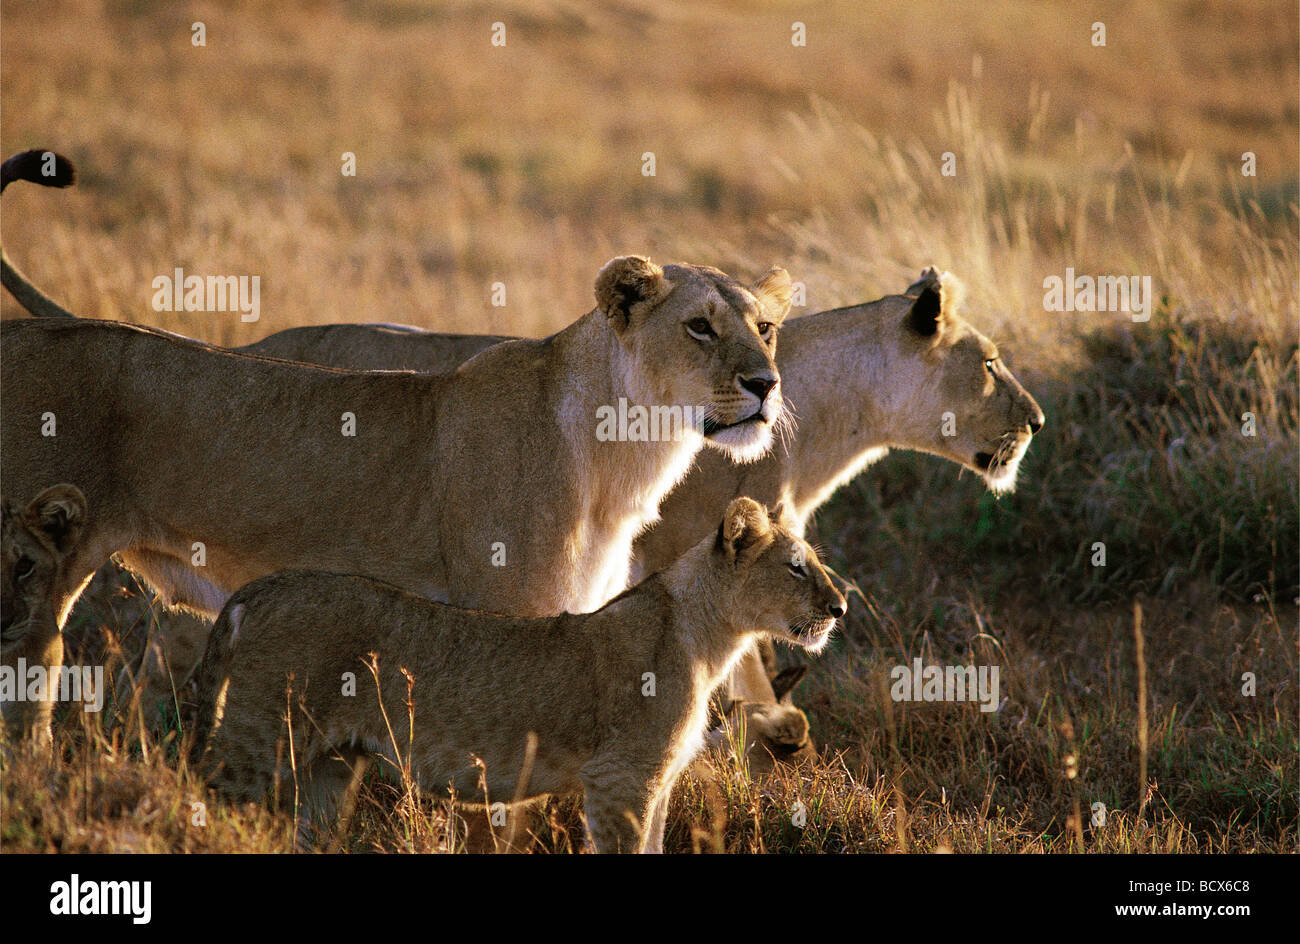 Dos Leonas alerta y Cub Reserva Nacional de Masai Mara en Kenya África Oriental Foto de stock